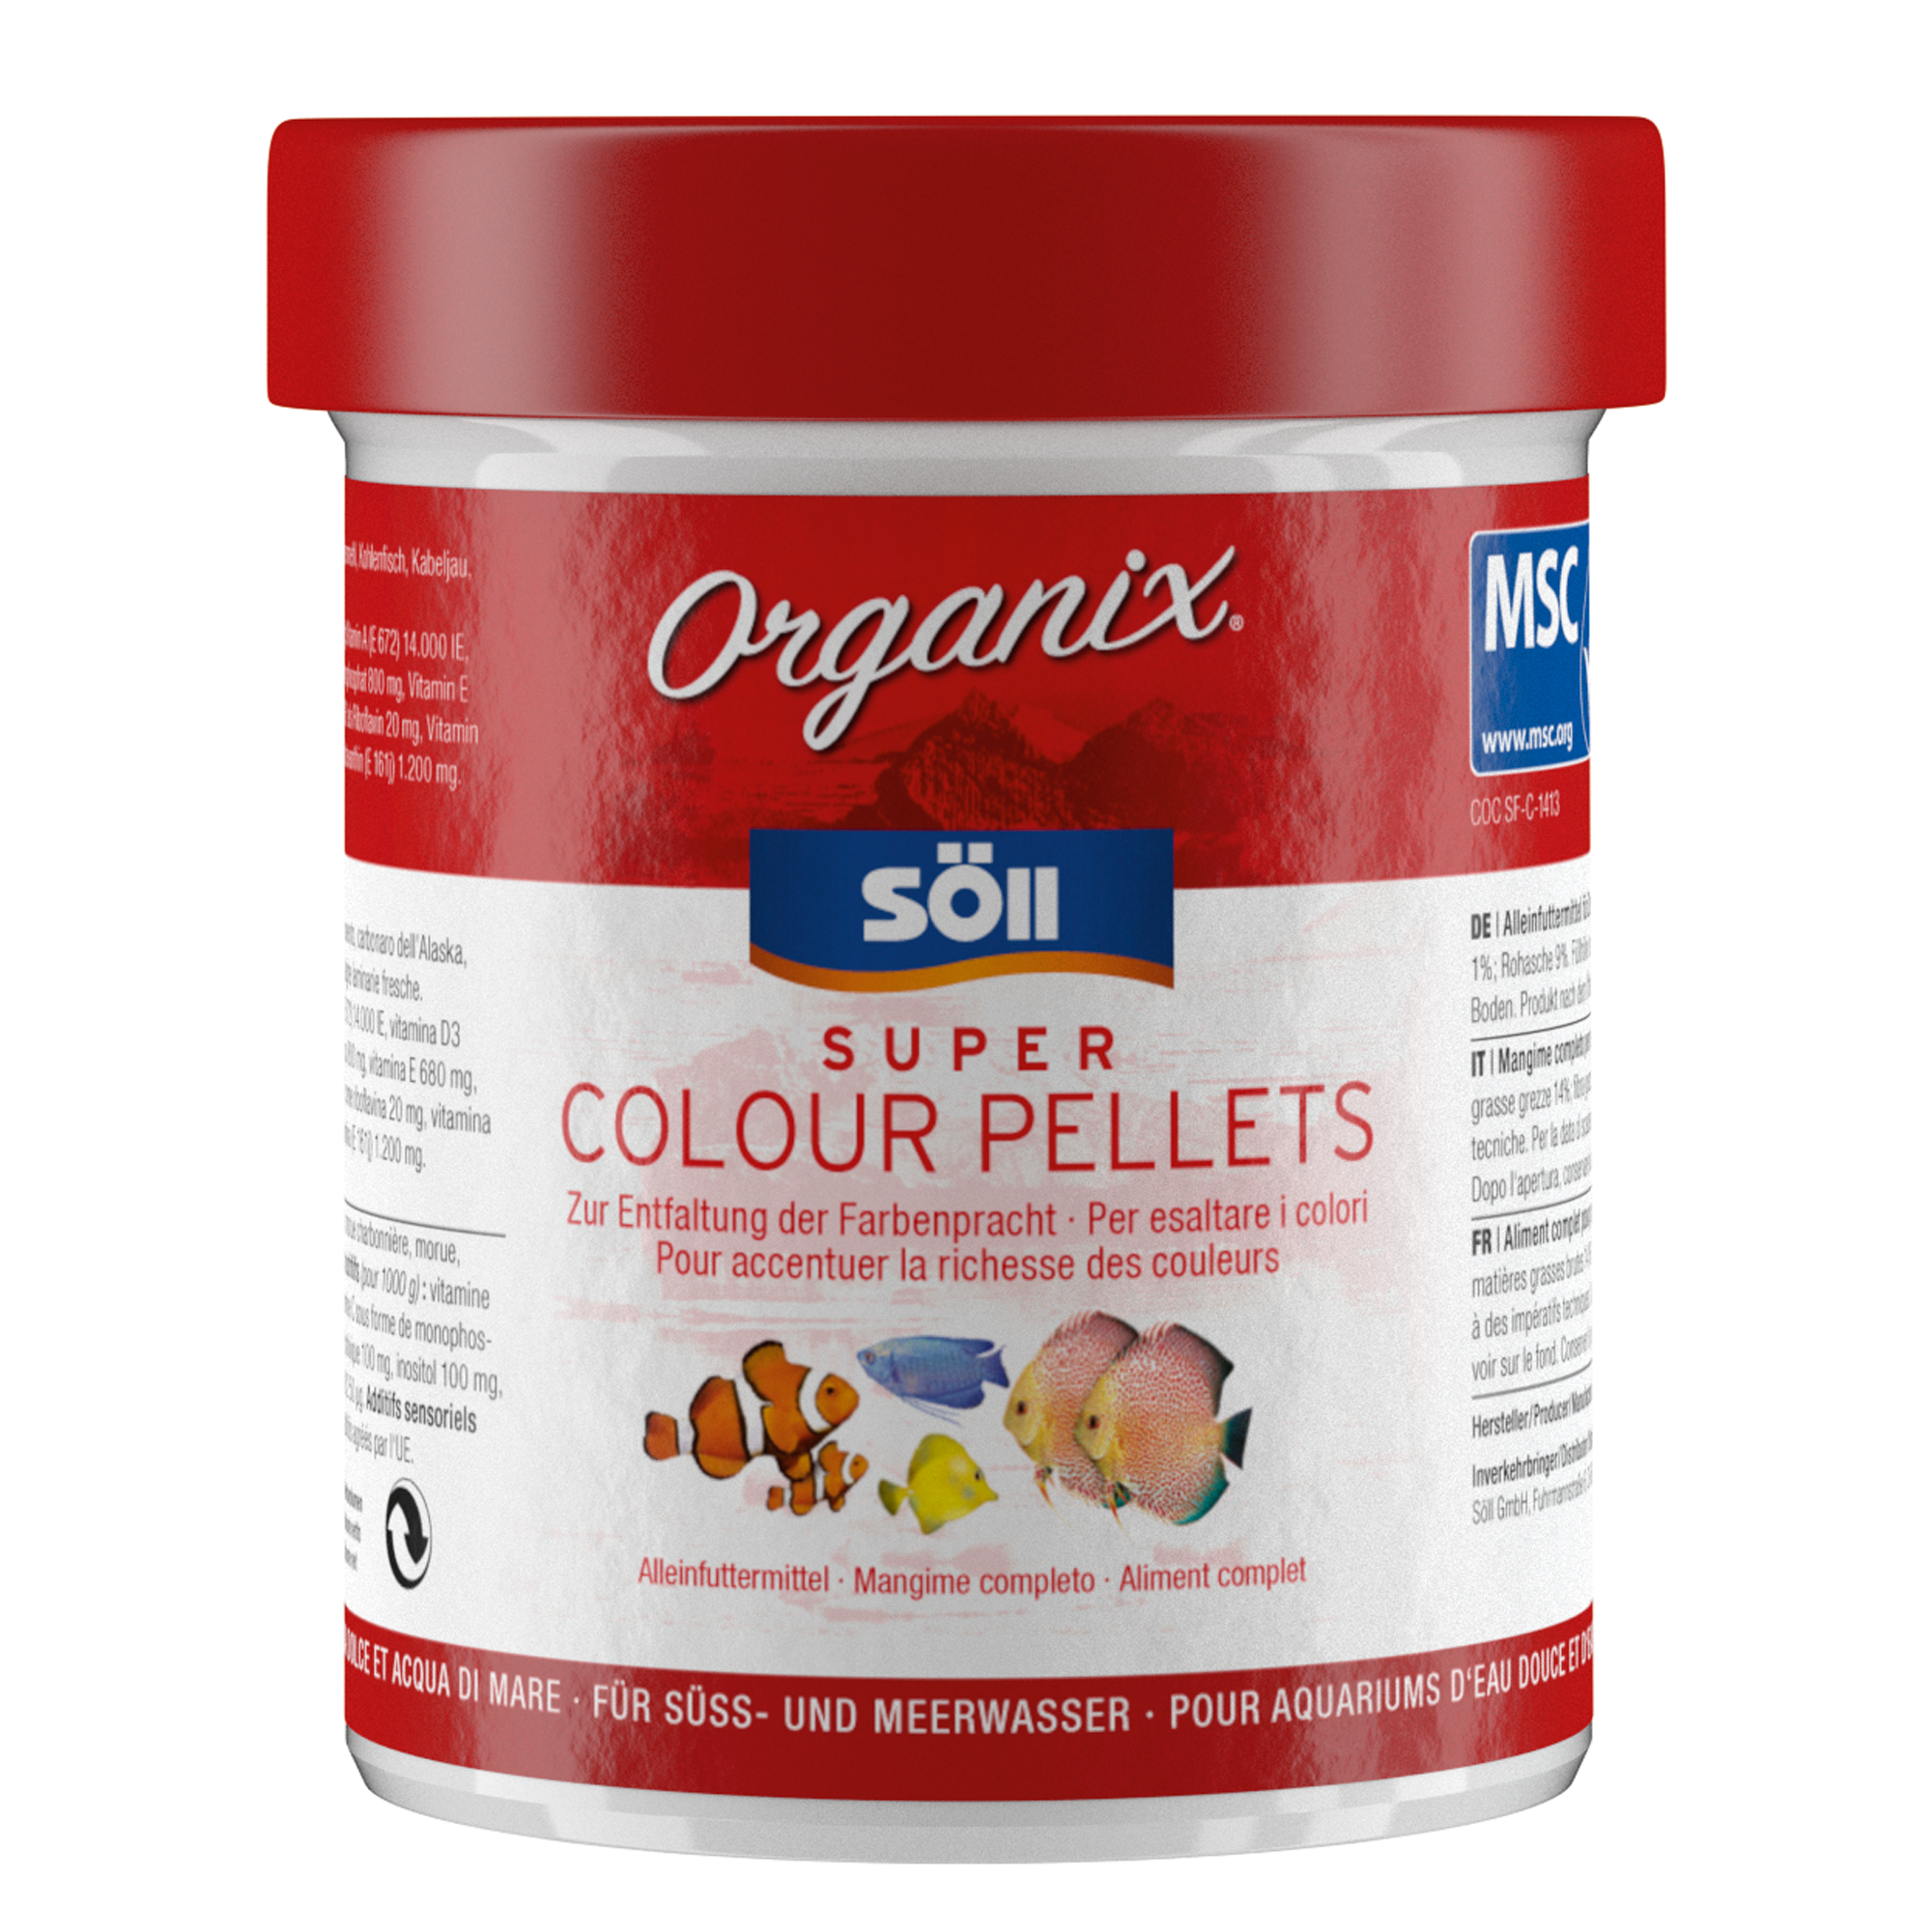 Organix Super Colour Pellets 130 ml + product picture